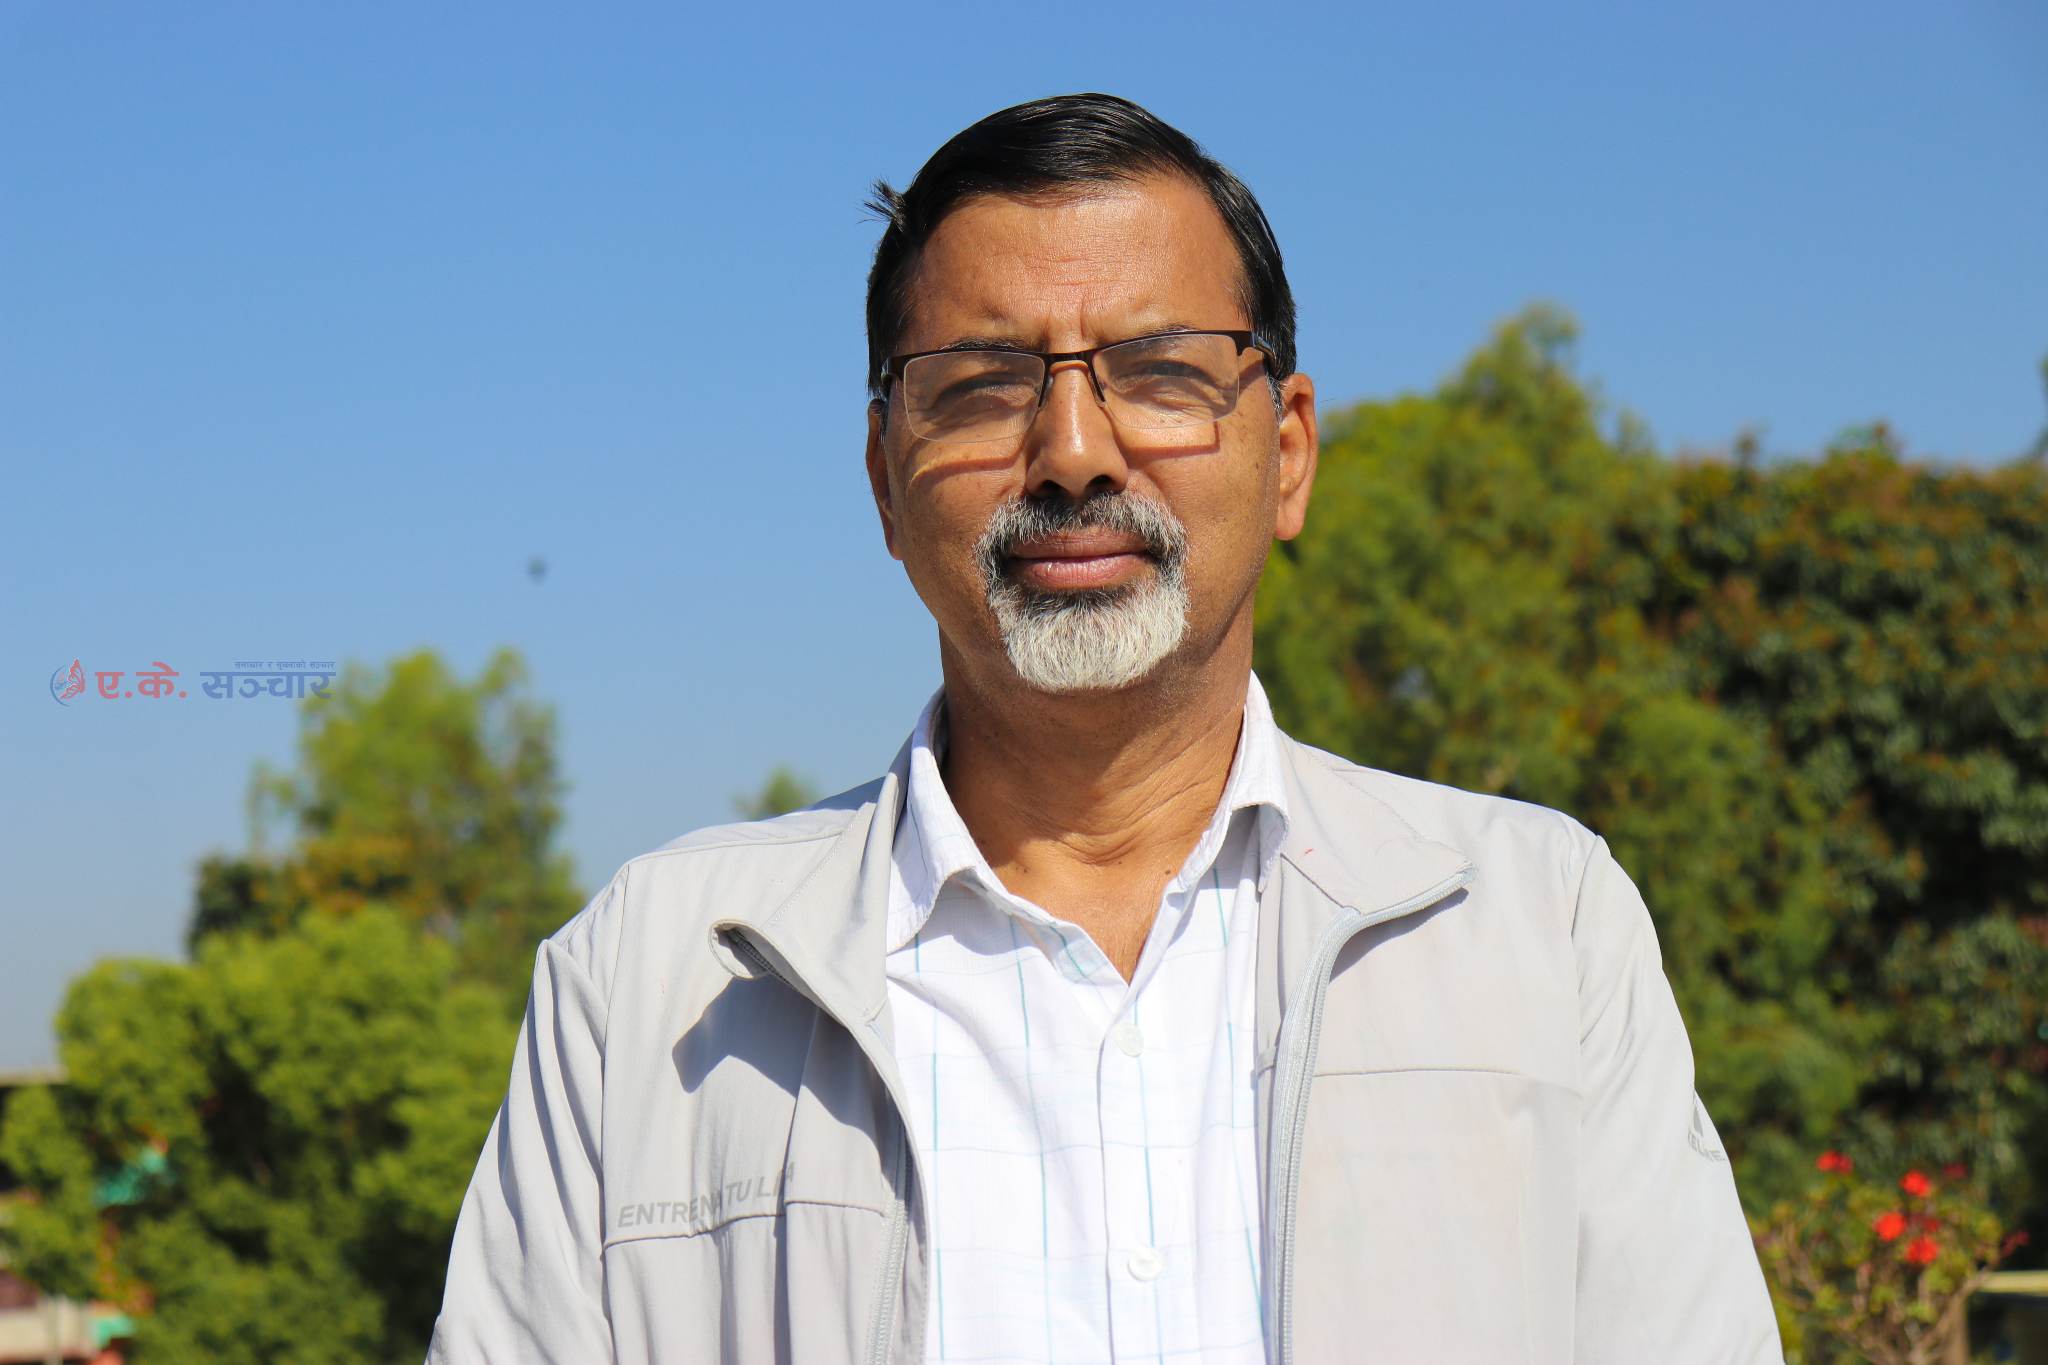 कर्णालीमा मन्त्रिमण्डल पुनर्गठनबारे कांग्रेससँग छलफल भयोः जनार्दन शर्मा